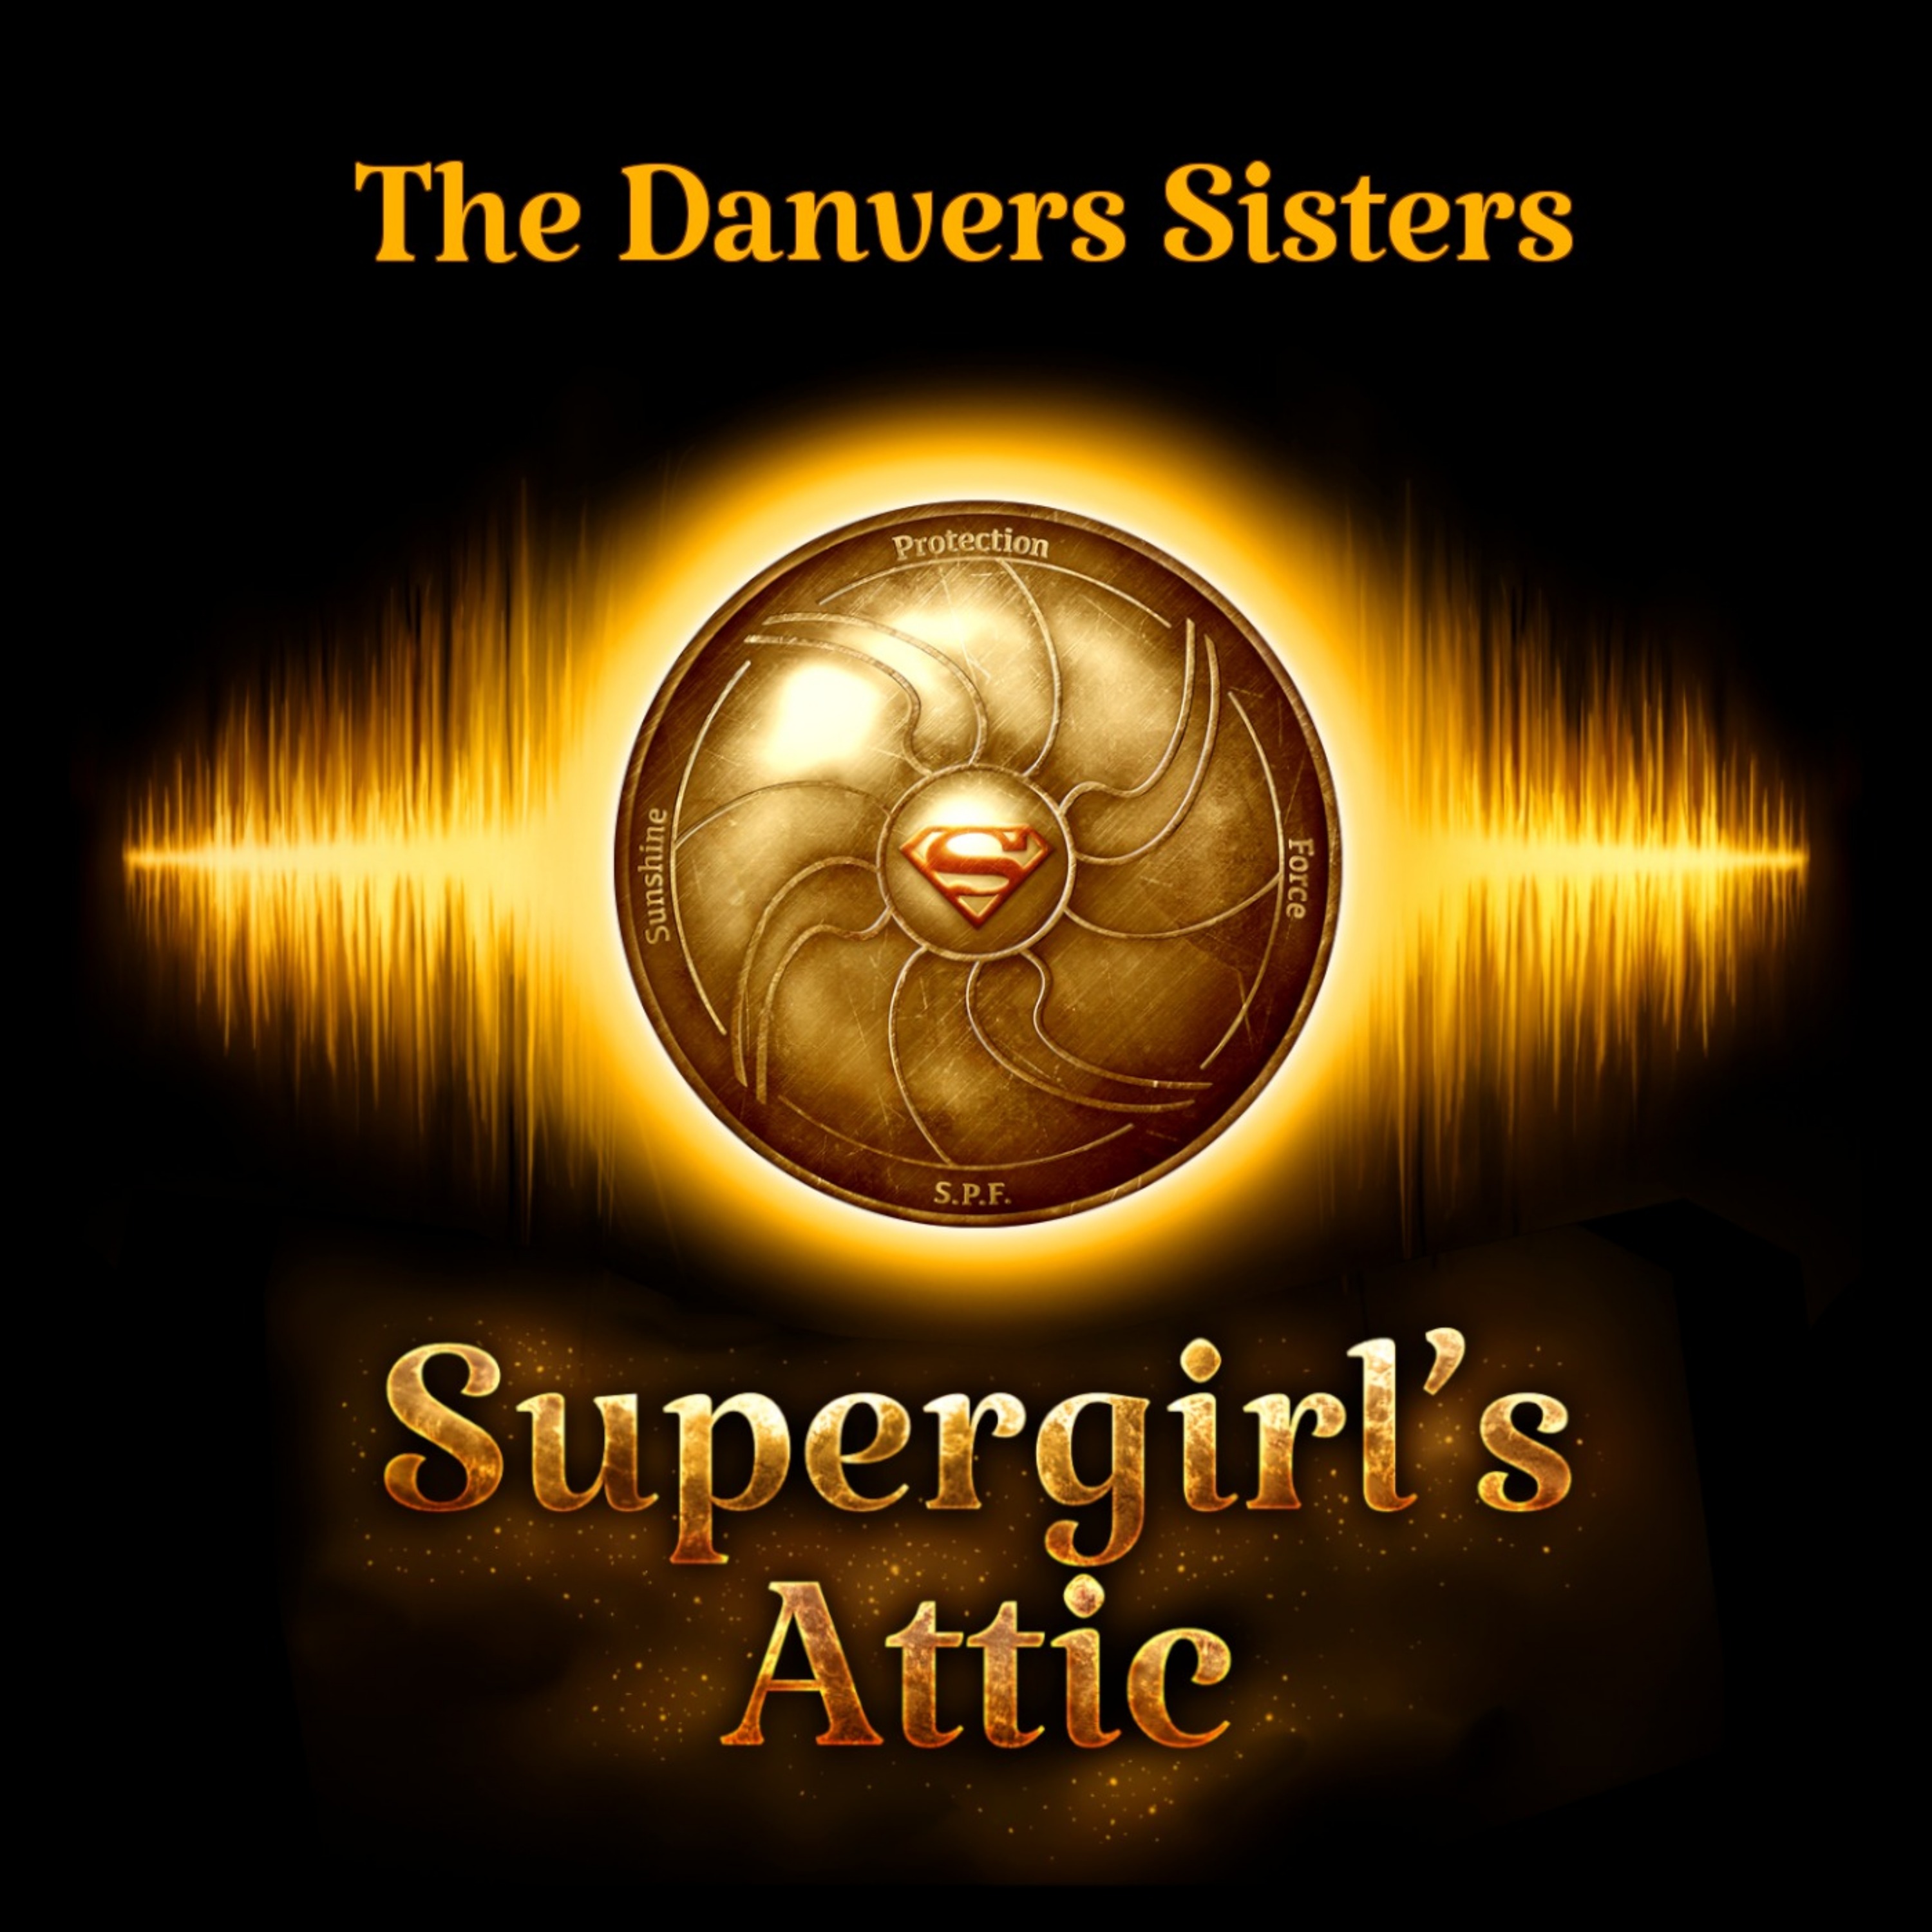 The Danvers Sisters